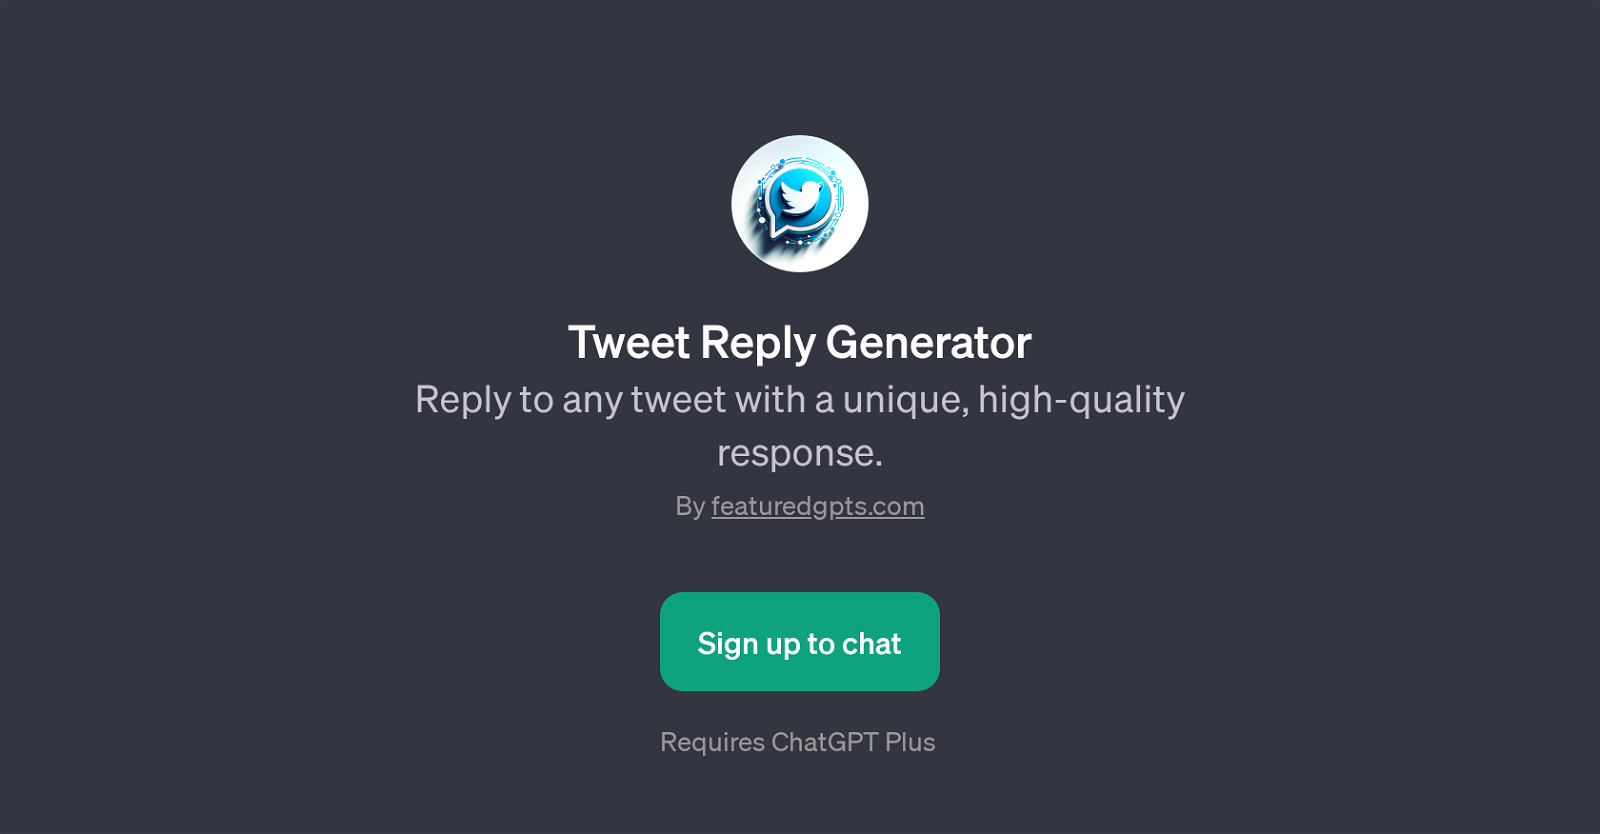 Tweet Reply Generator website